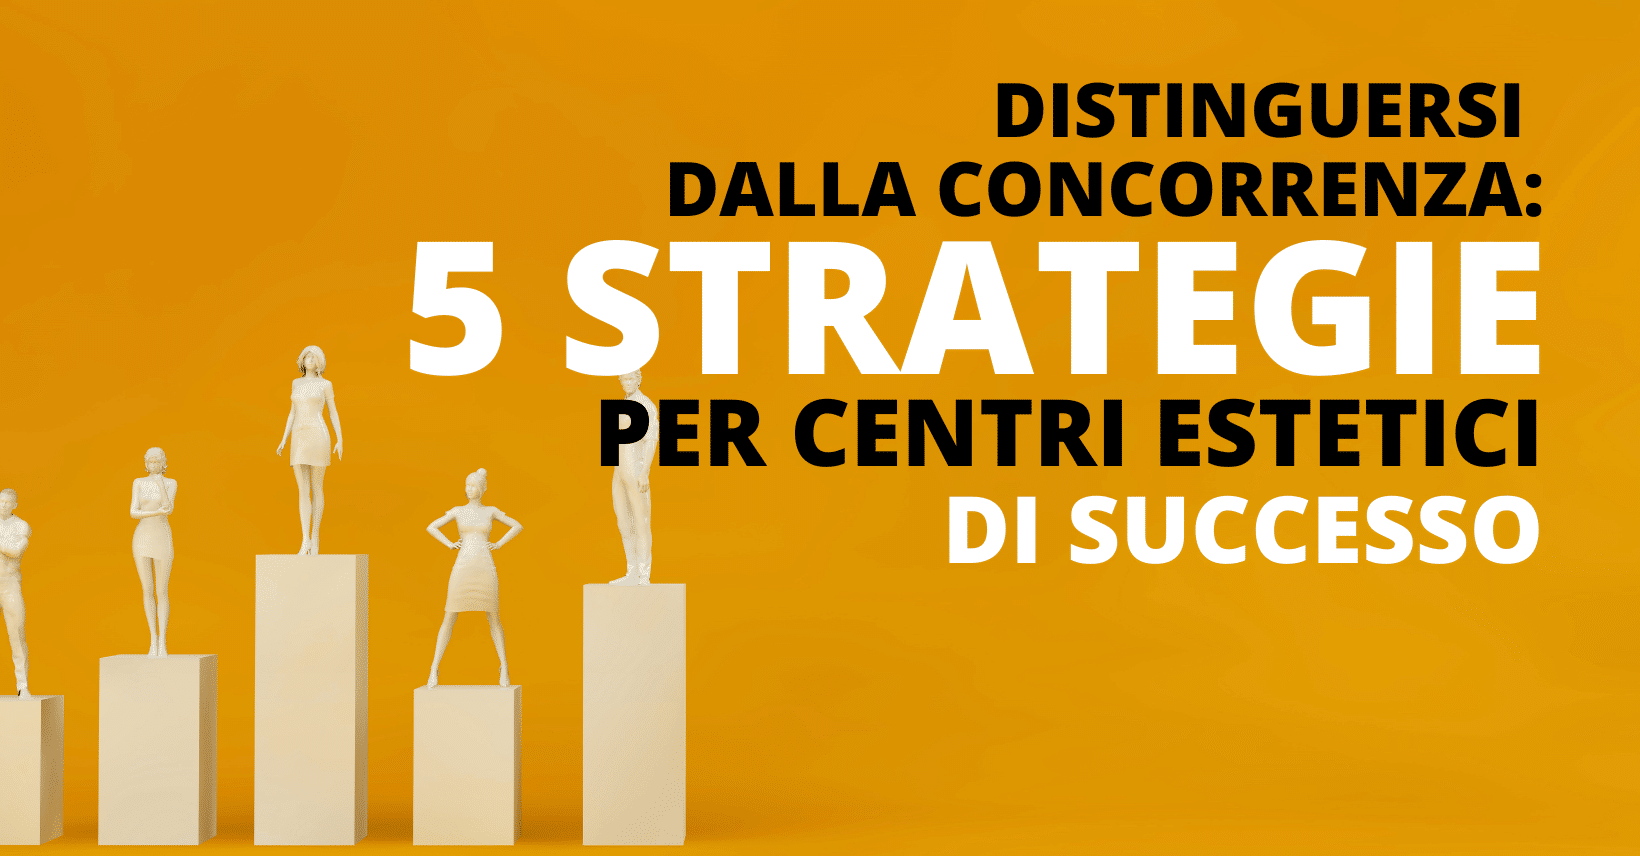 5 strategie di diversificazione per distinguersi dalla concorrenza nel settore estetico